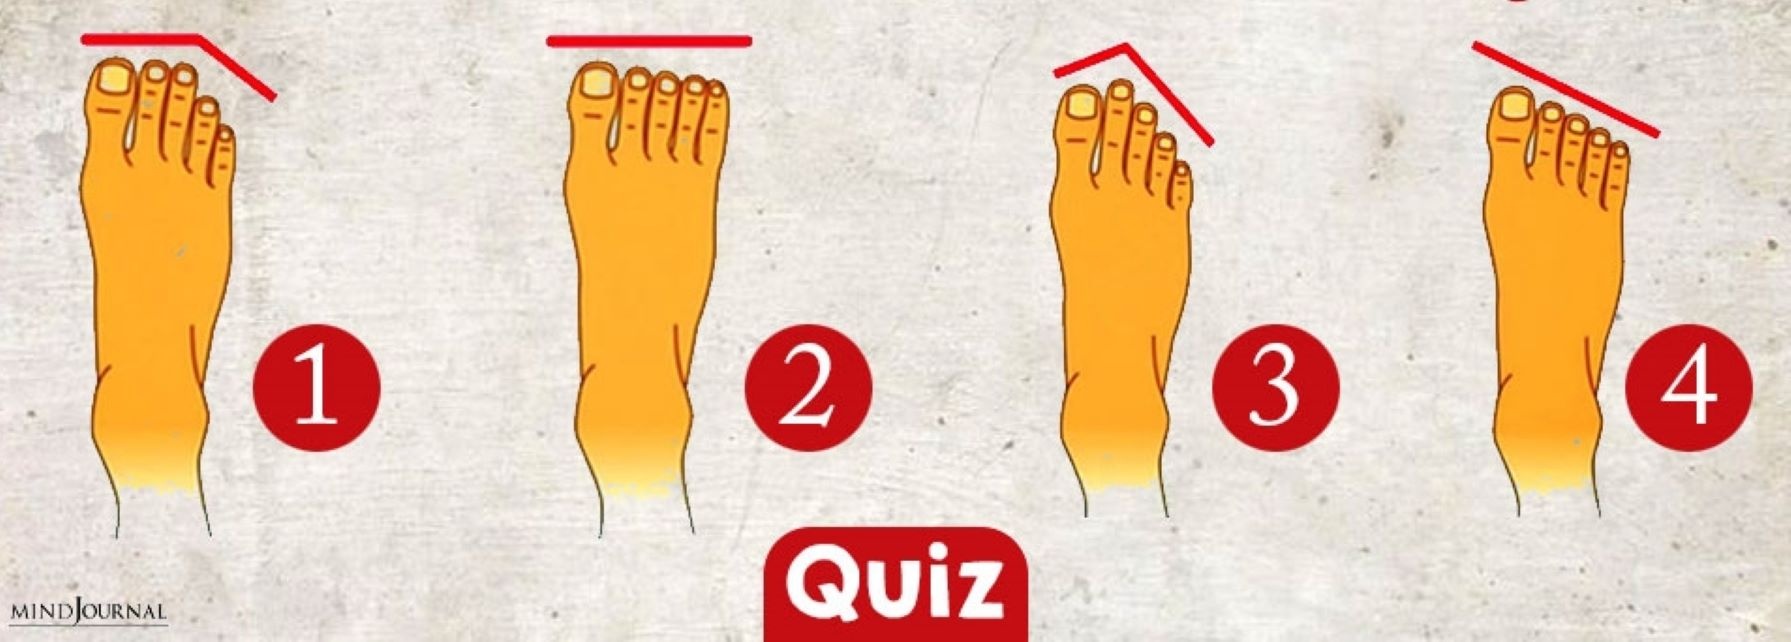 Τεστ: Τα δάκτυλα των ποδιών δείχνουν πόσο Έλληνας είσαι και αν είναι ευχαριστημένος ο σύντροφός σου